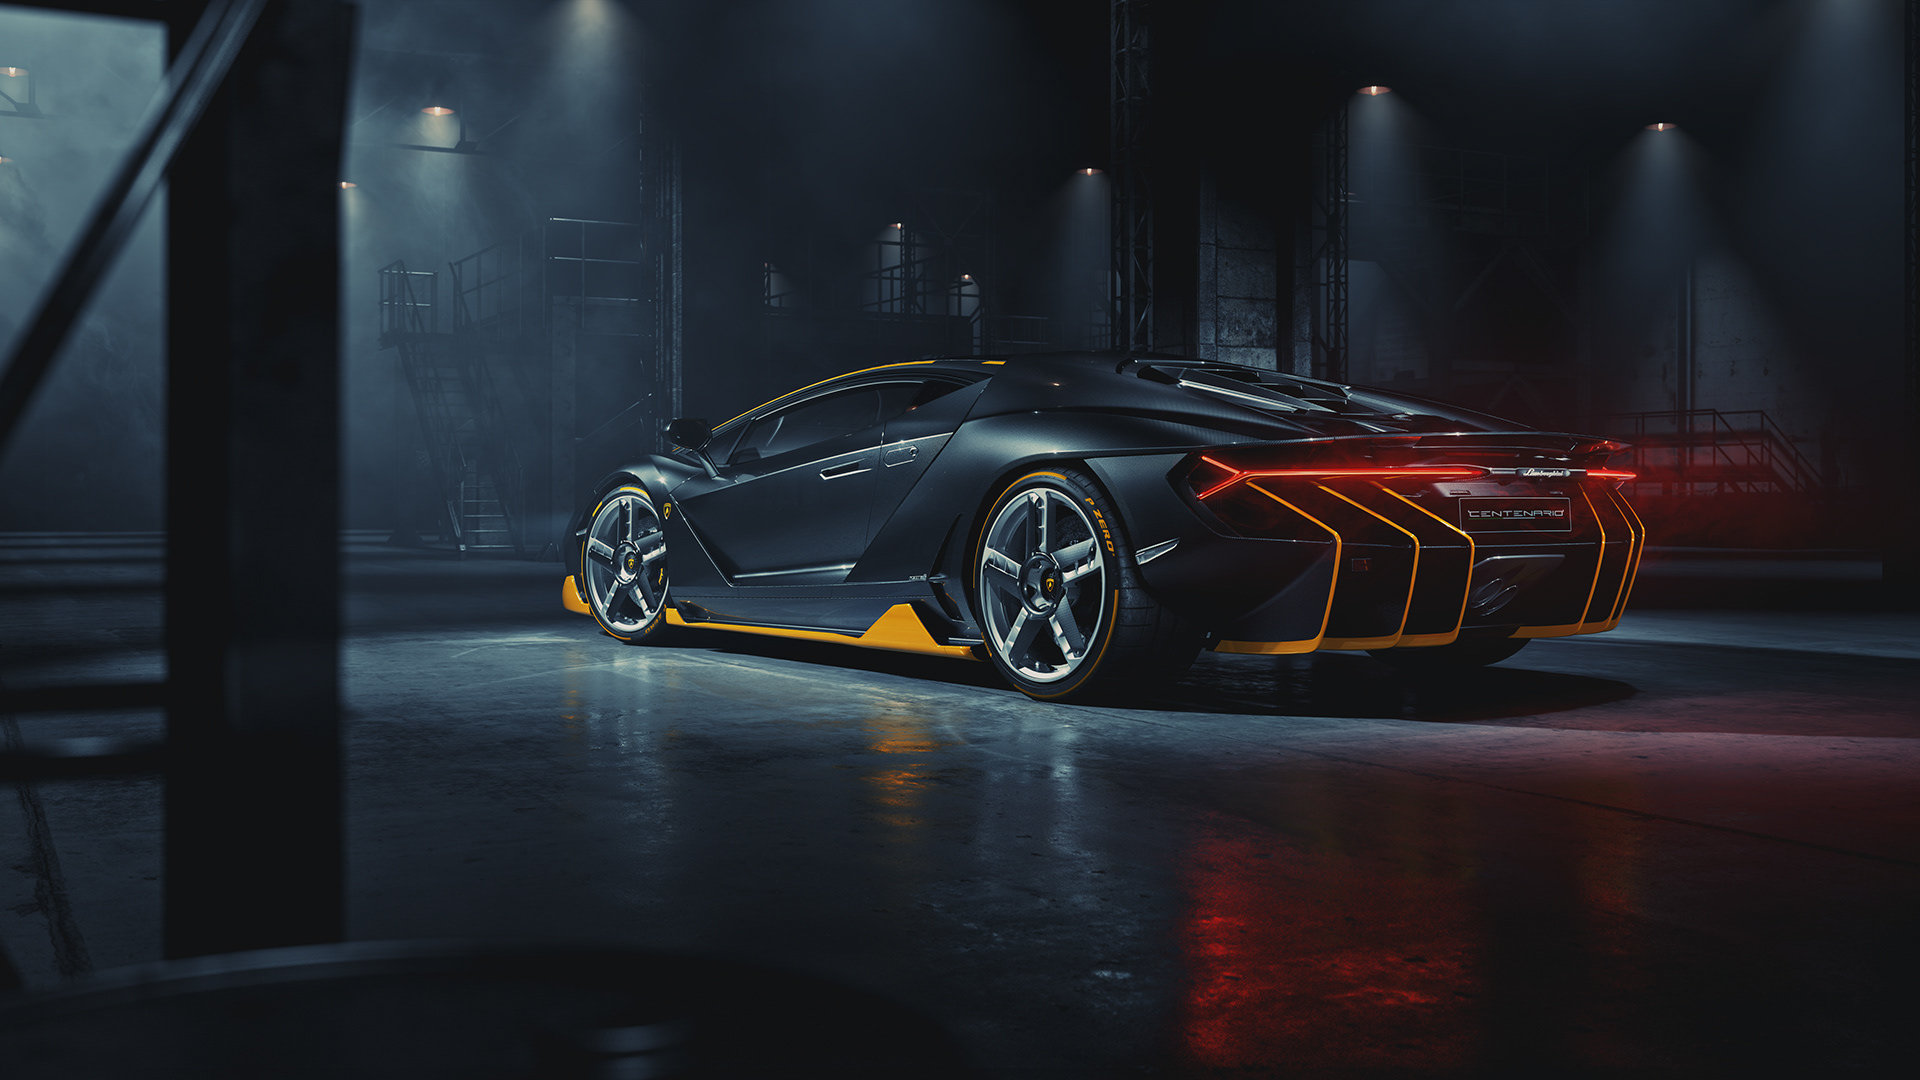 Lamborghini Centenario \u2013 Full CGI on Behance21046191477621.5e32d3fdbc8ec.jpg